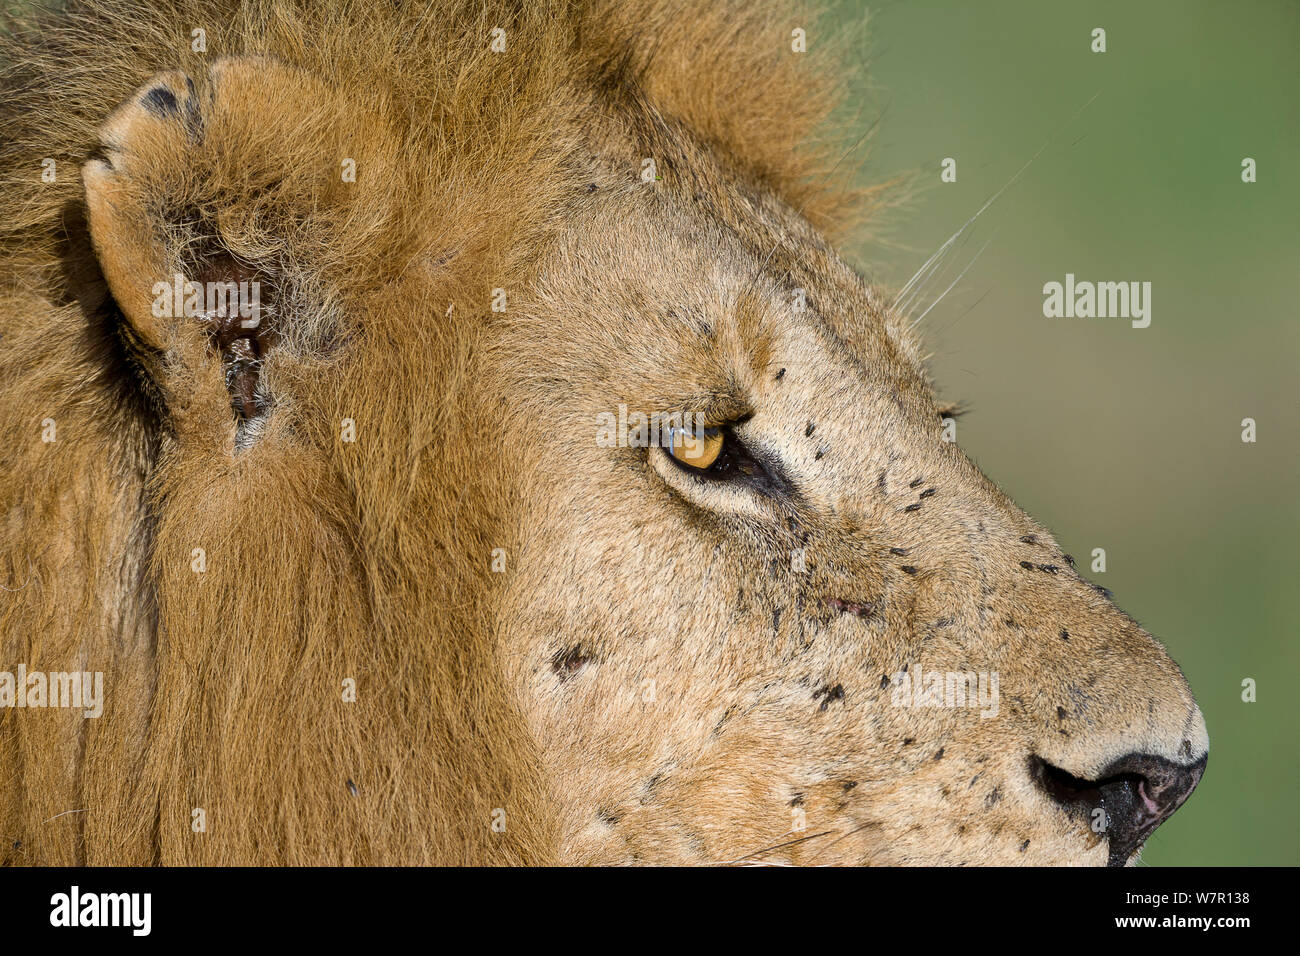 Löwe (Panthera leo) männlich in Fliegen, Masai-Mara Game Reserve, Kenia. Gefährdete Arten. Stockfoto